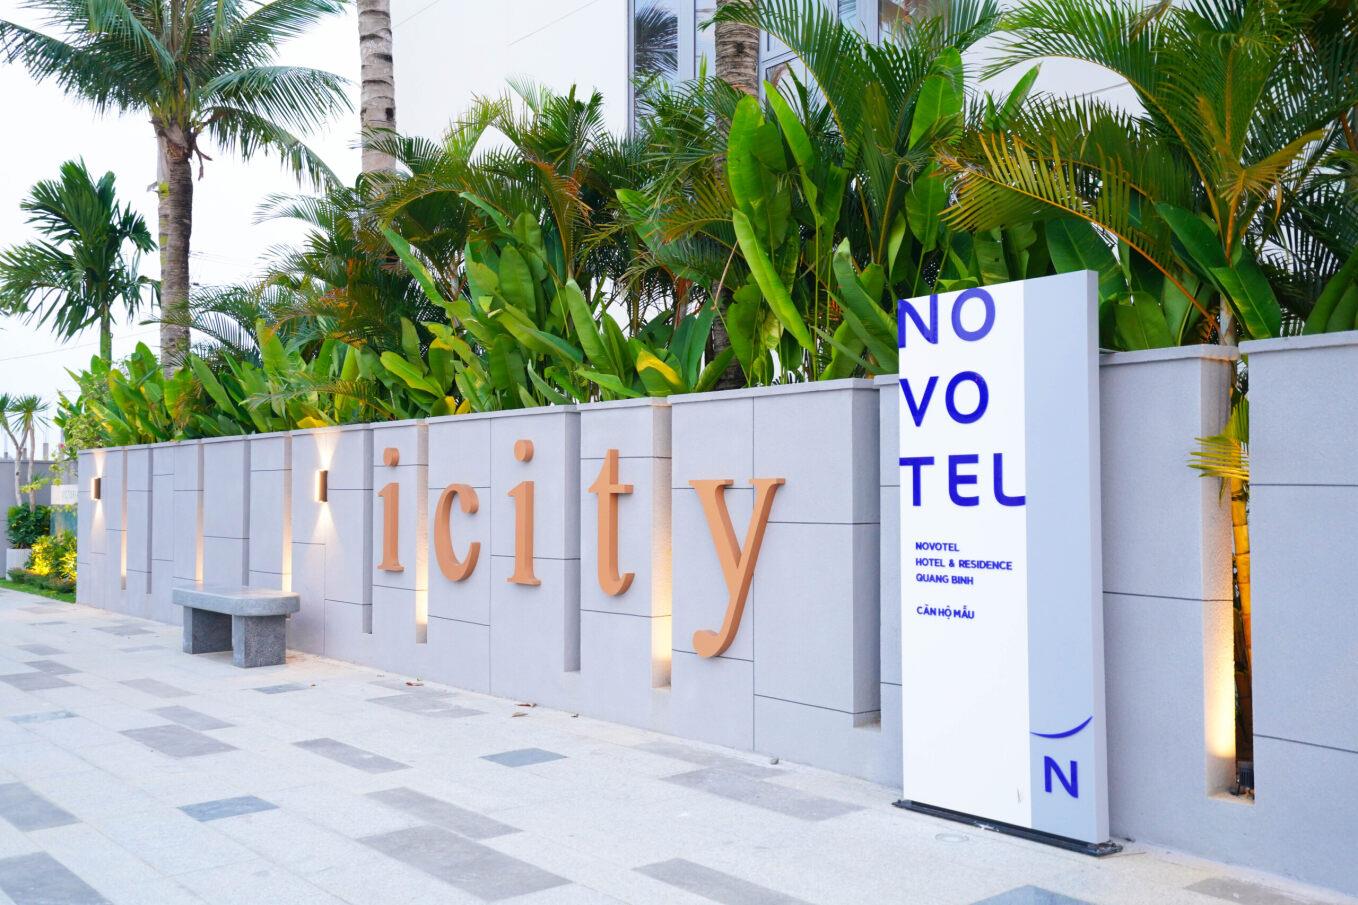 Căn hộ mẫu khu cao tầng thương hiệu Novotel Residence Quảng Bình thu hút nhà đầu tư - Viet Nam Smart City